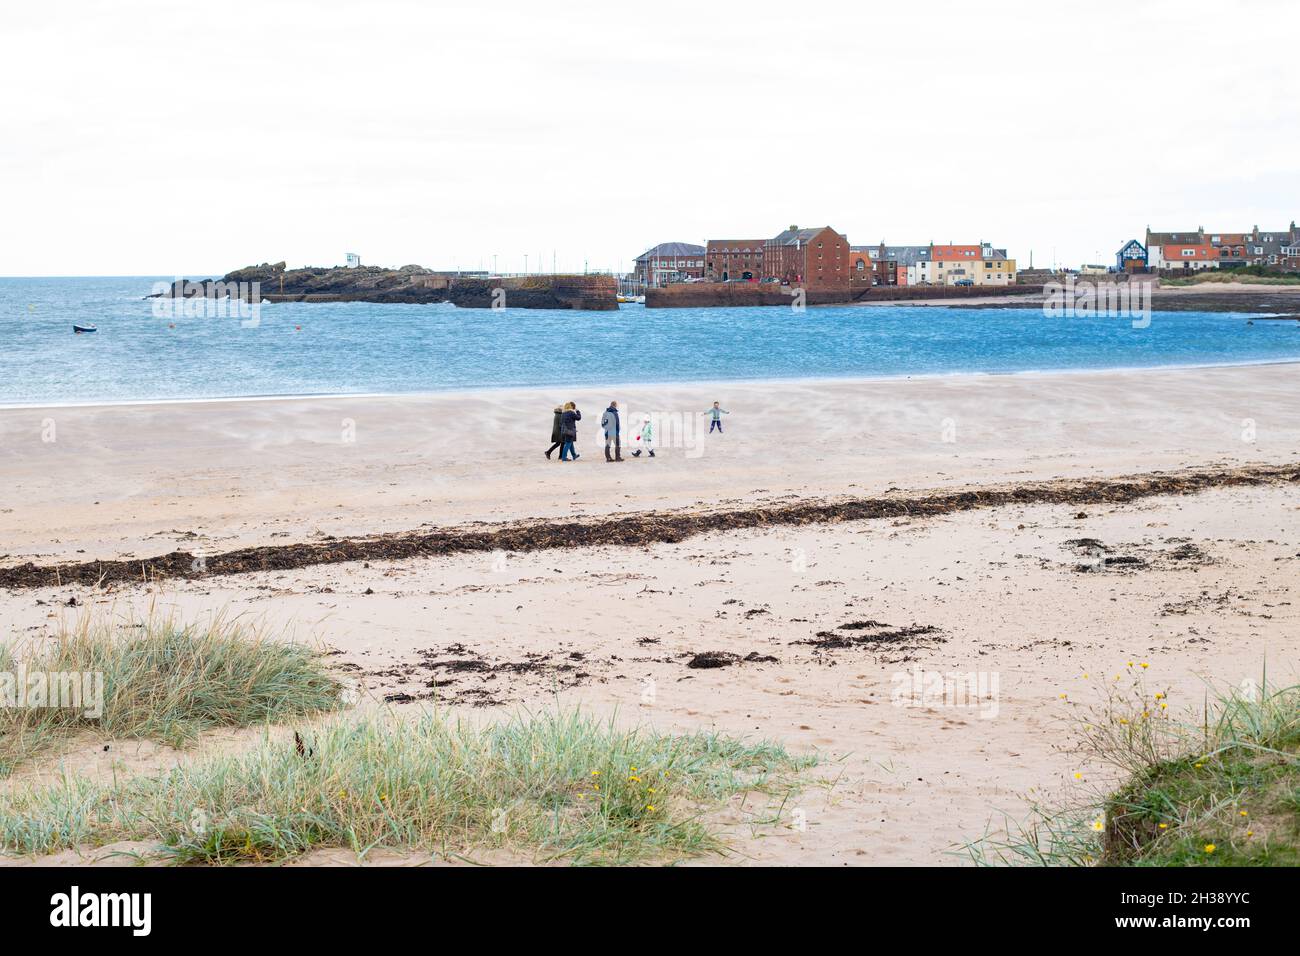 West Beach, North Berwick, Écosse, Royaume-Uni - groupe familial marchant le long de la plage par temps venteux Banque D'Images